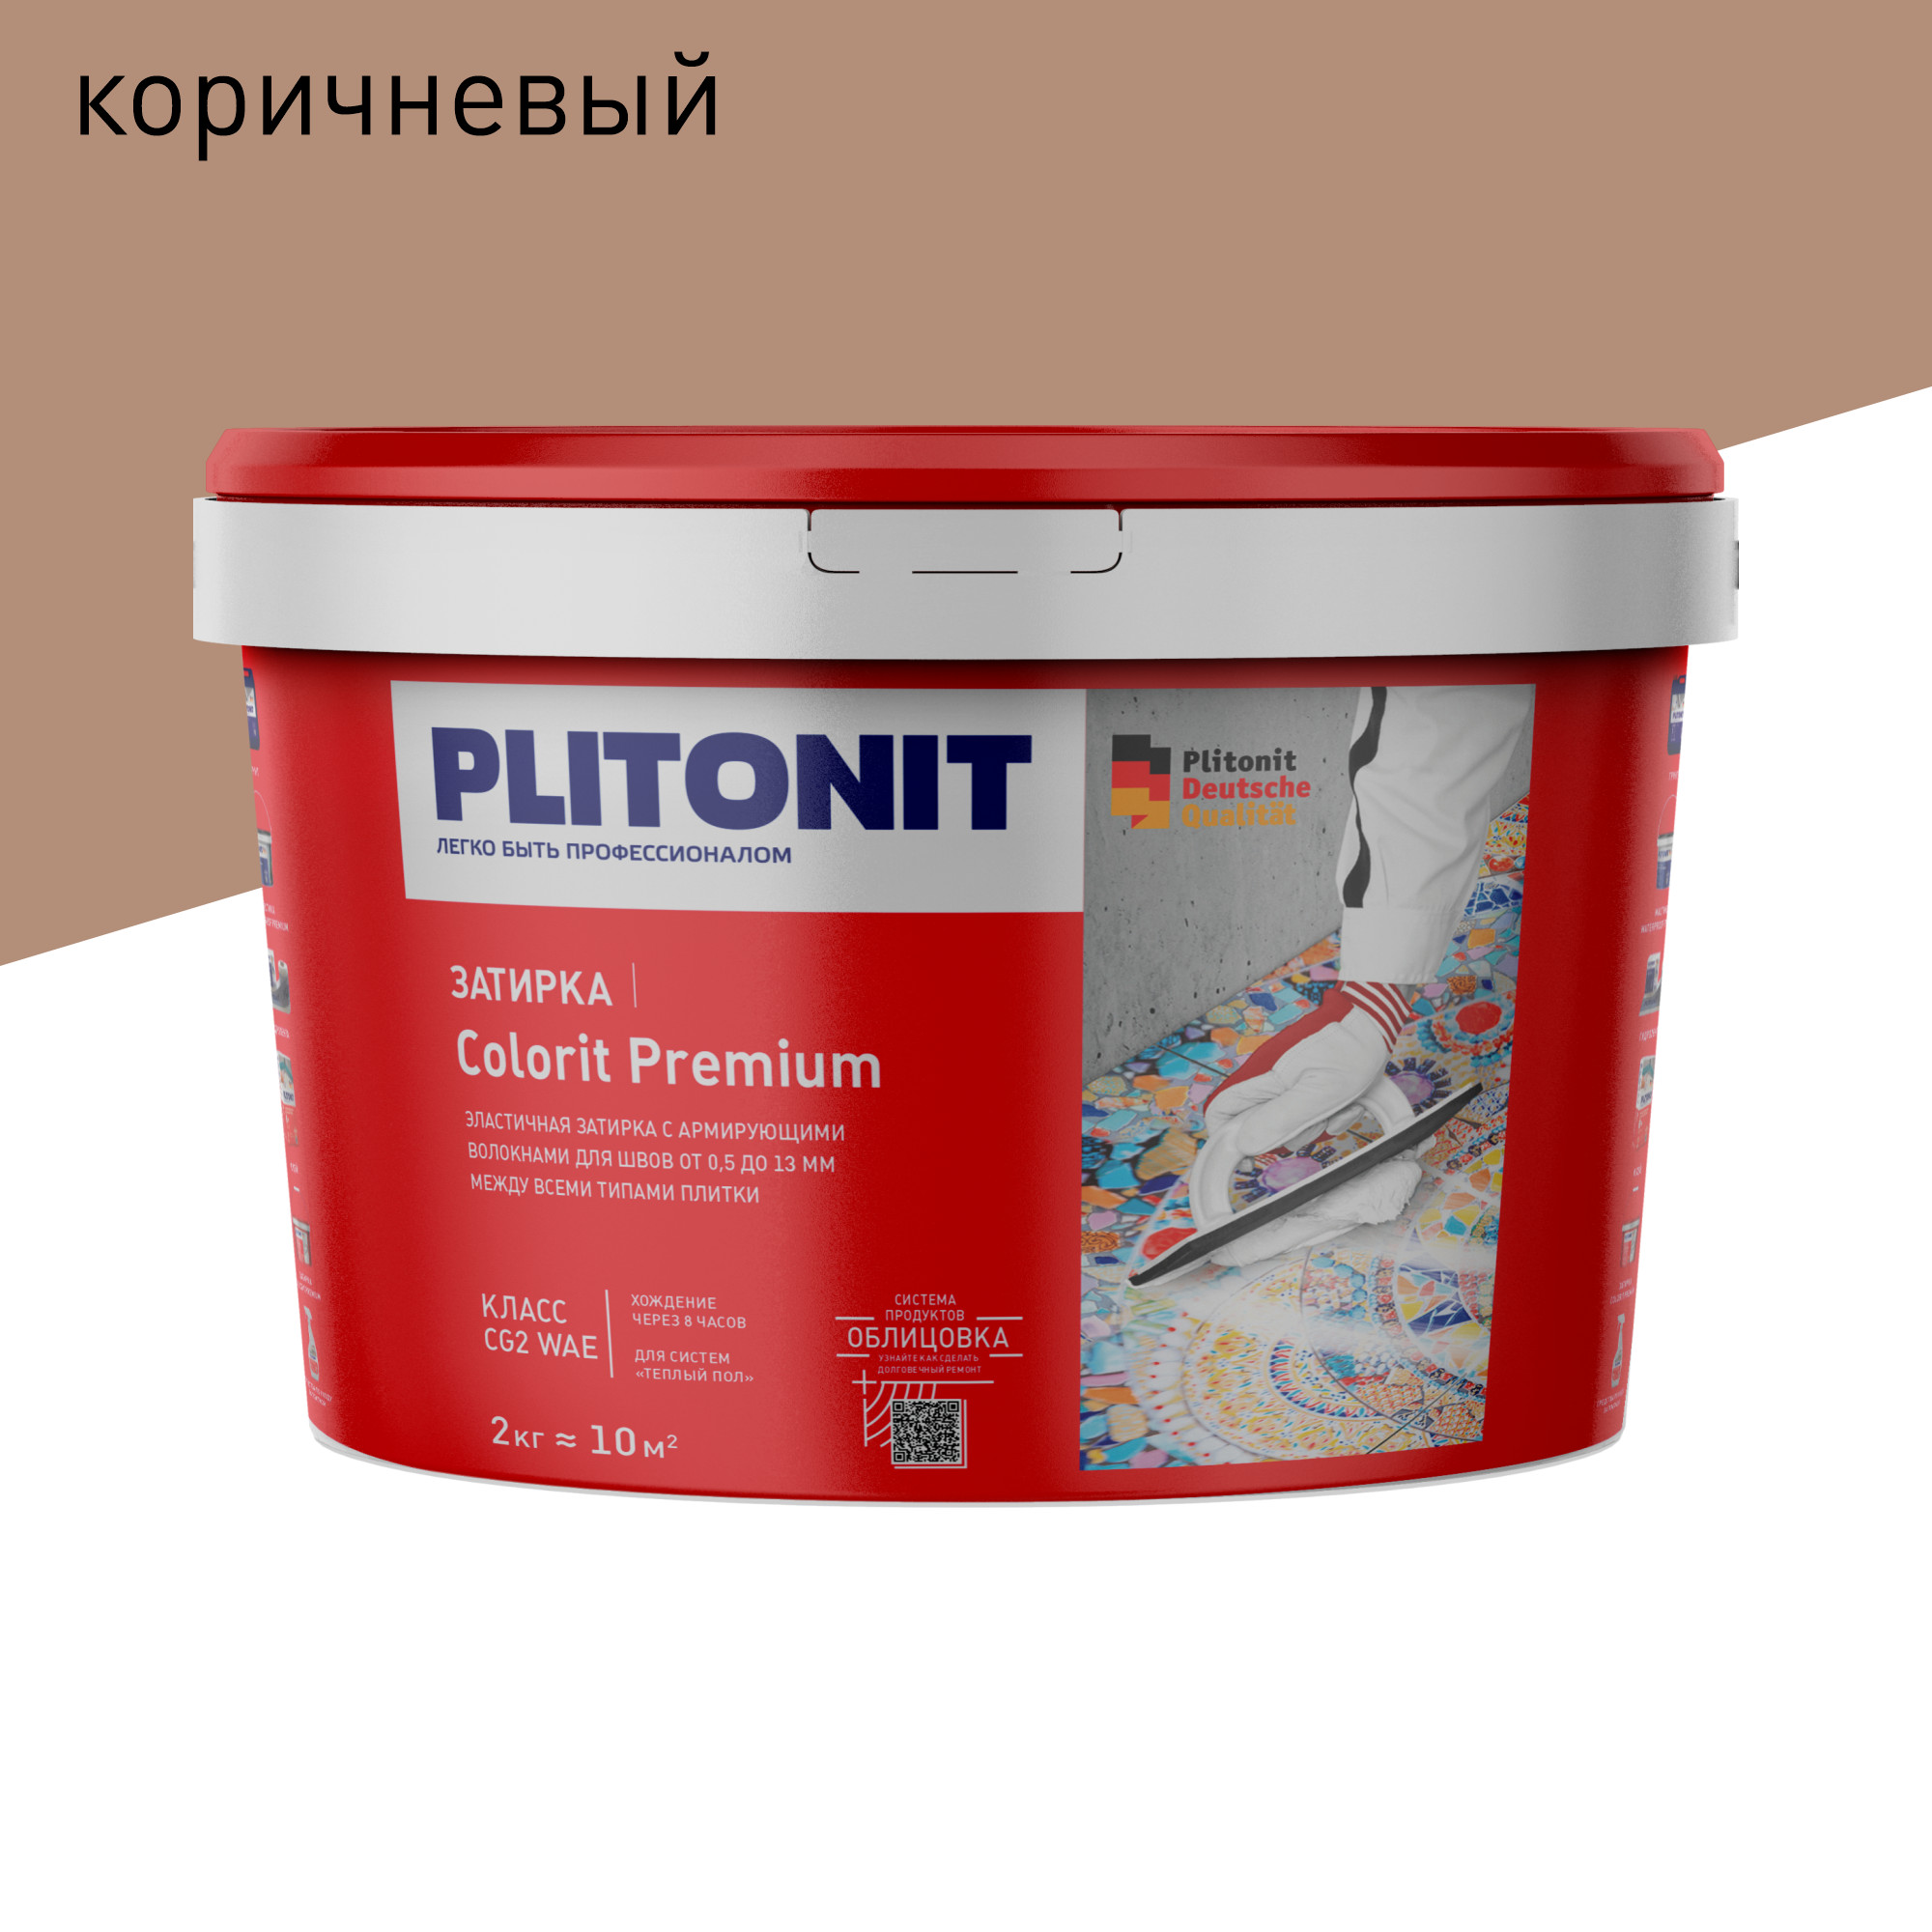 Затирка PLITONIT Colorit Premium коричневая 2 кг затирка эпоксидная plitonit colorit easyfill титановая 2 кг